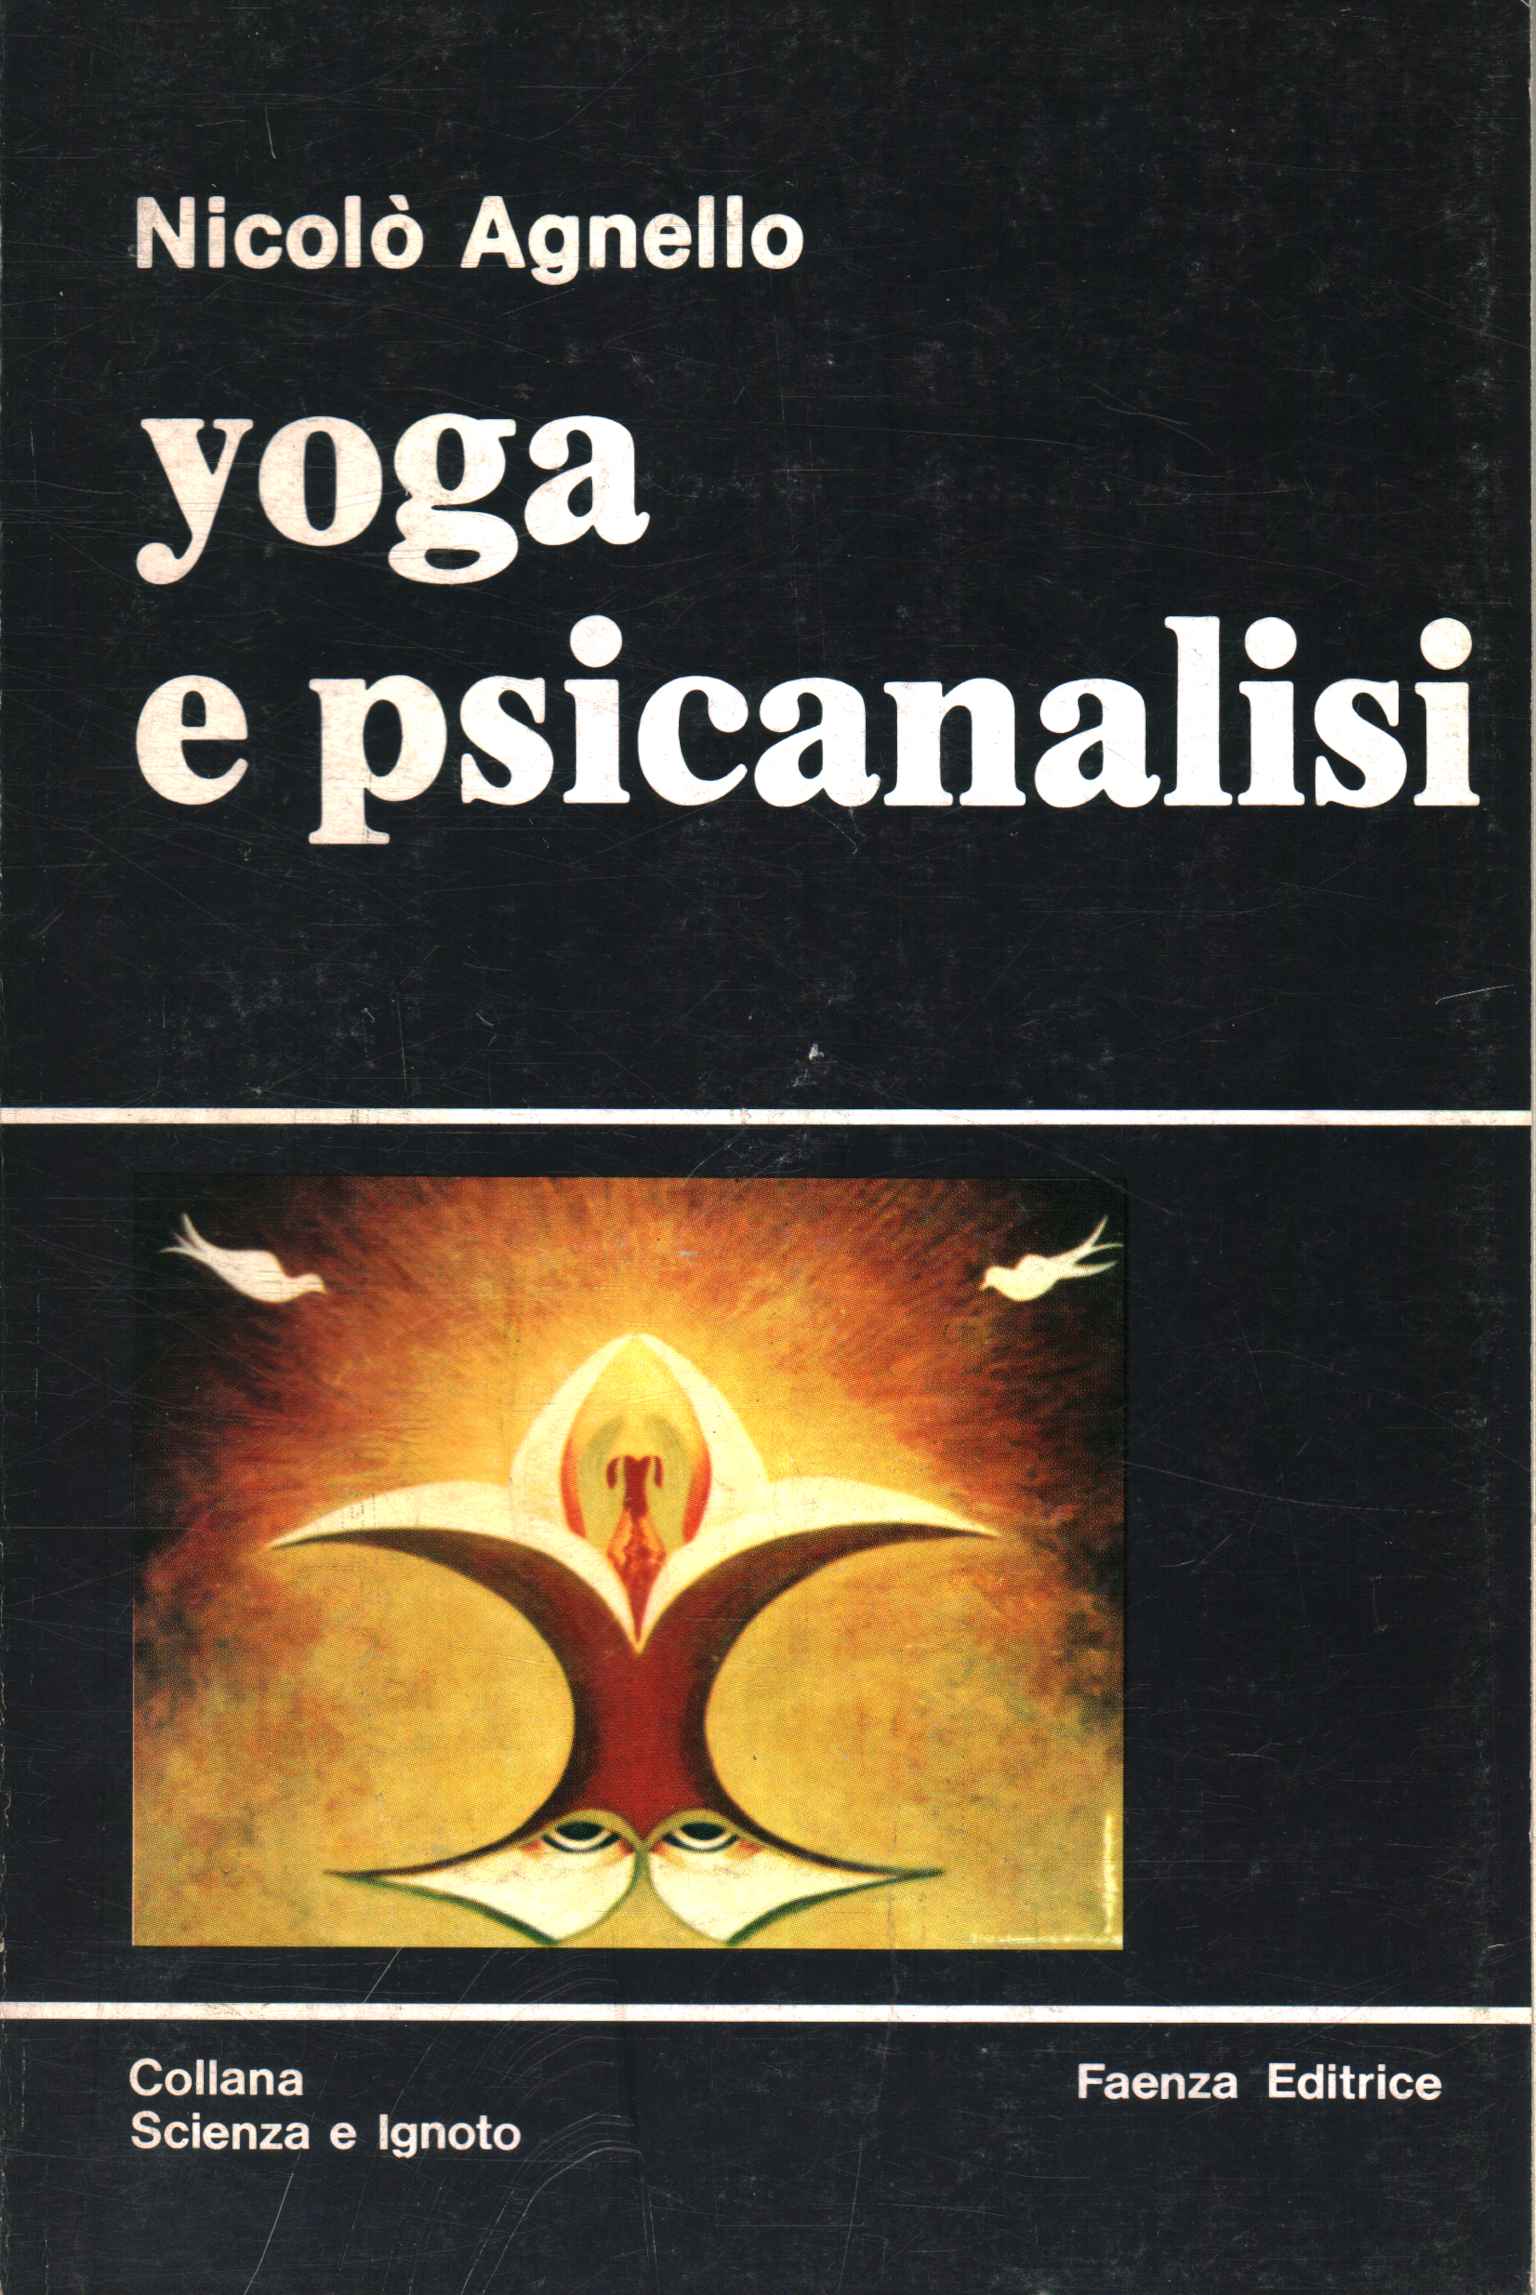 Yoga y psicoanálisis